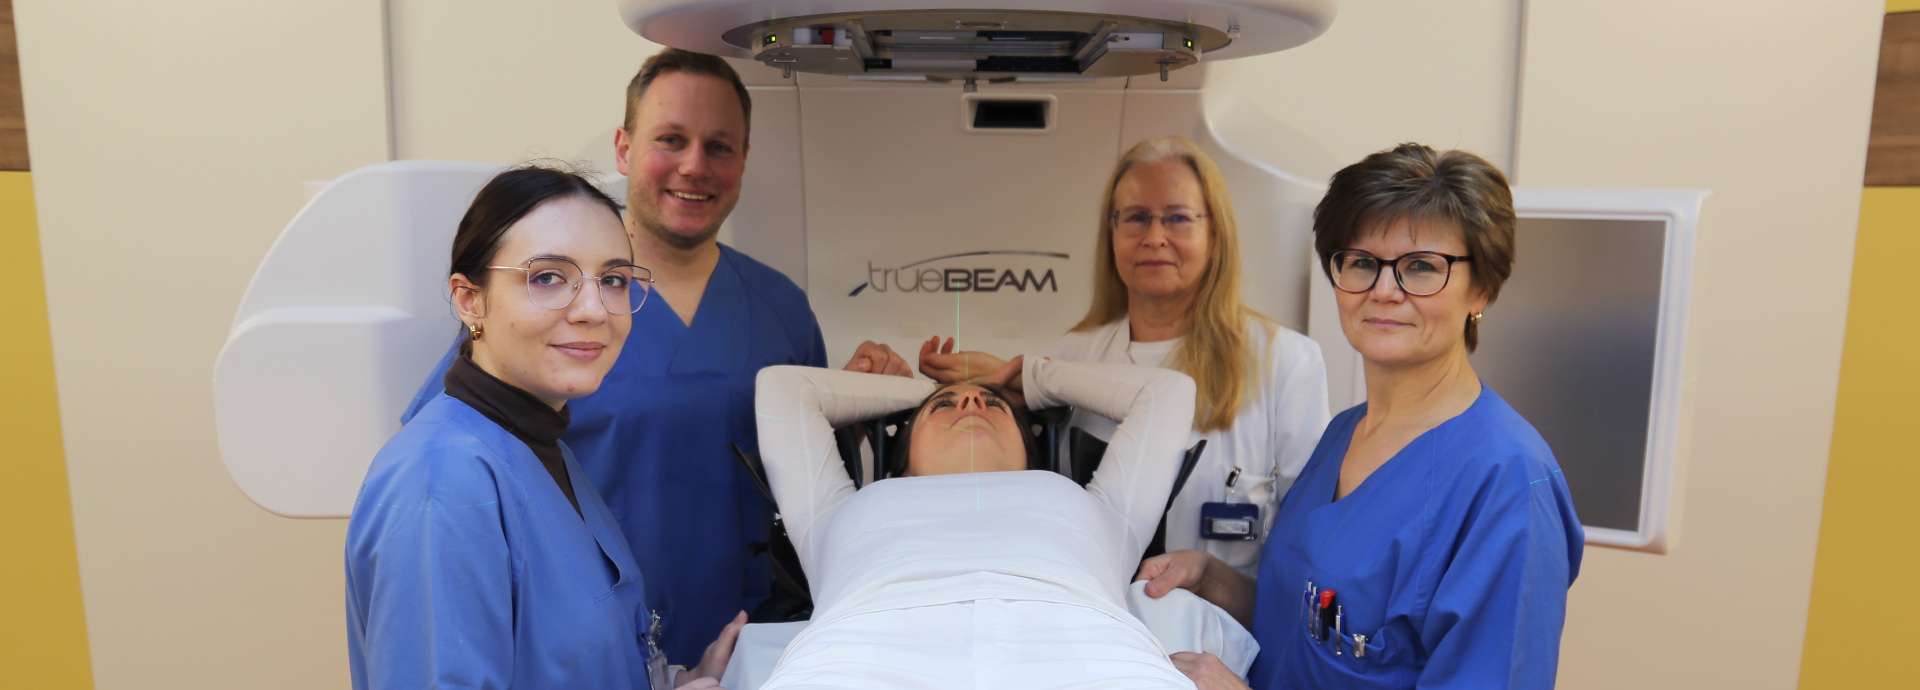 Bestrahlung mit dem TrueBeam-Beschleuniger in der Klinik für Strahlentherapie / Radioonkologie